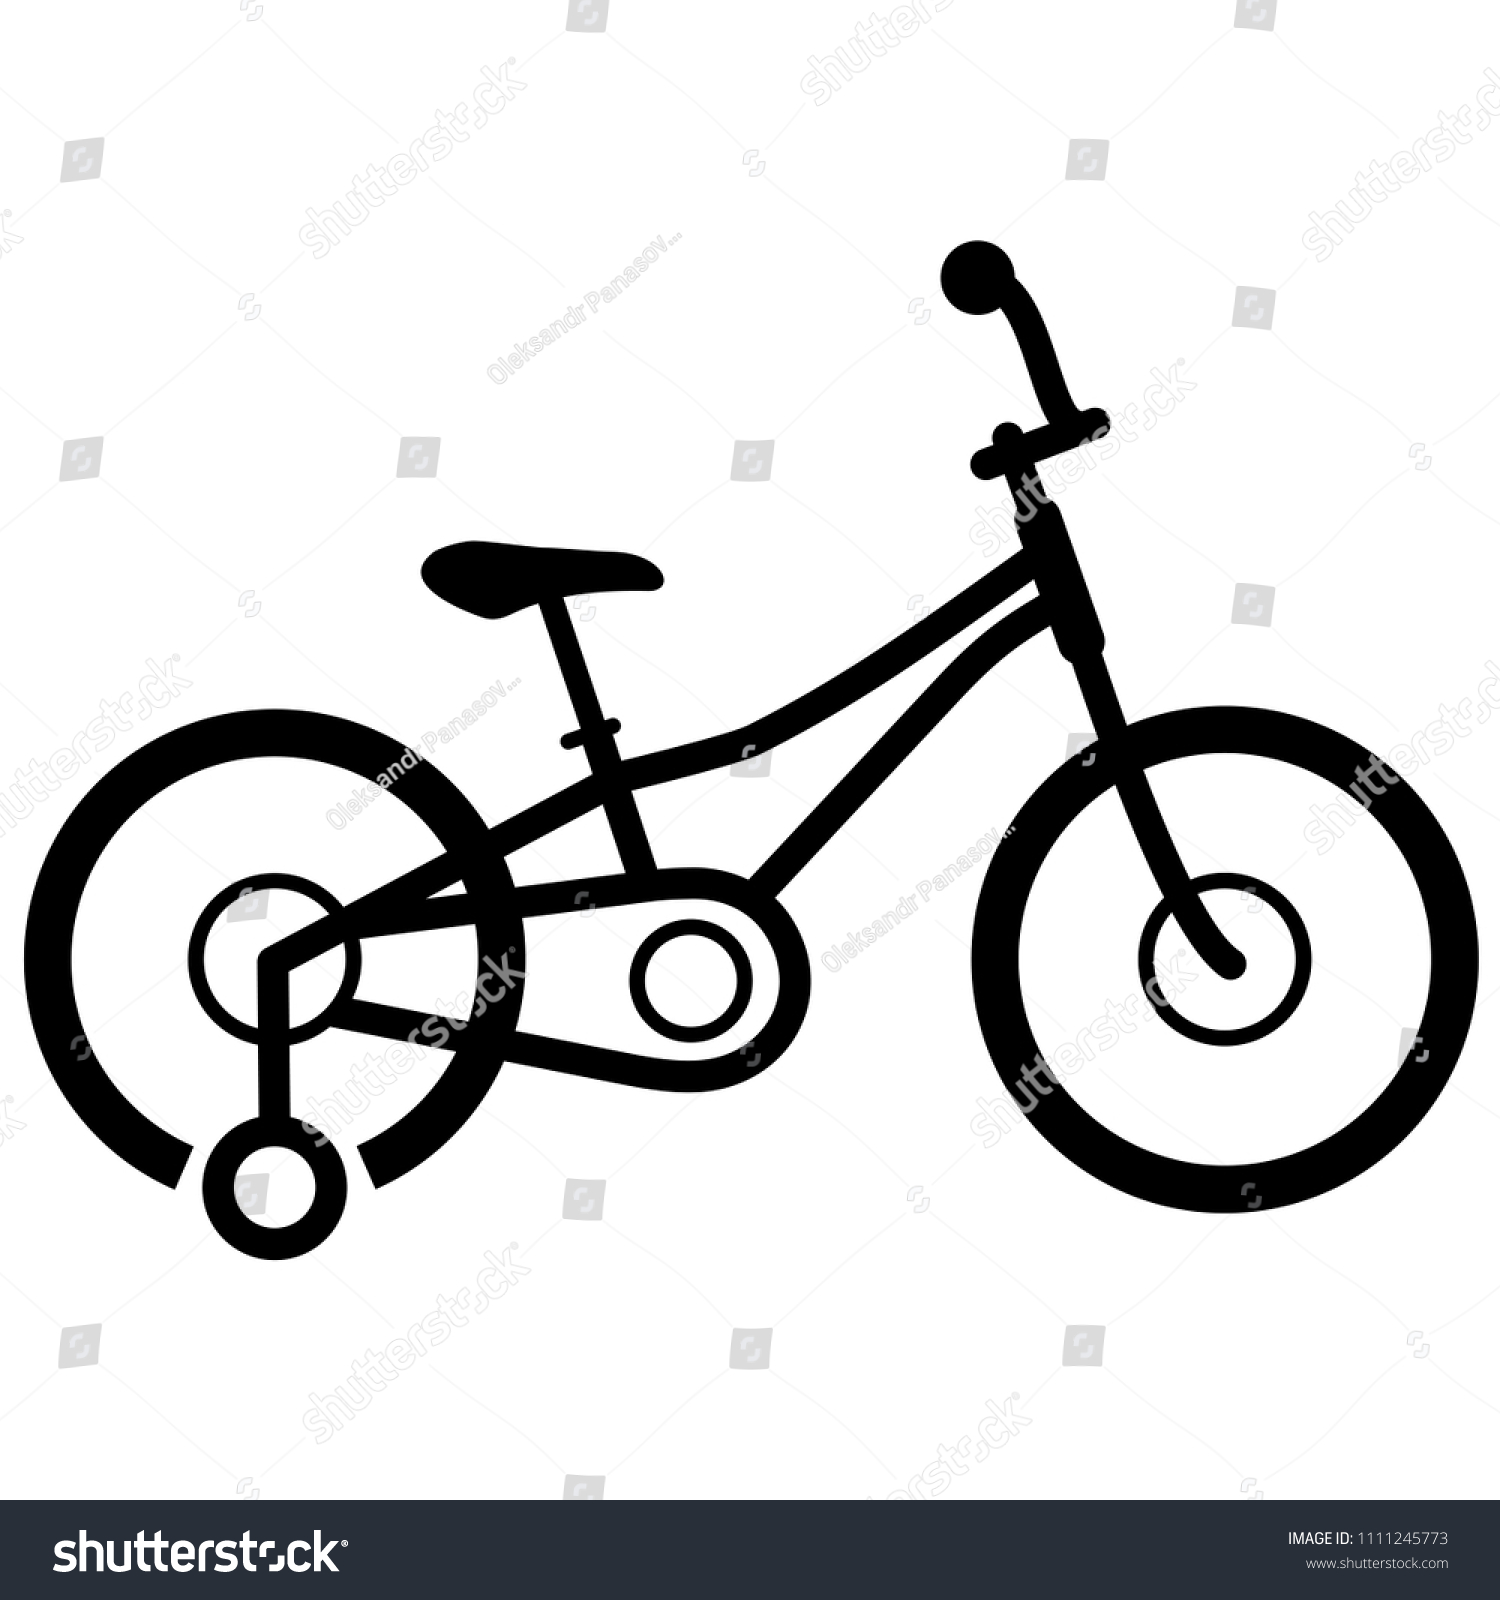 children's training bike